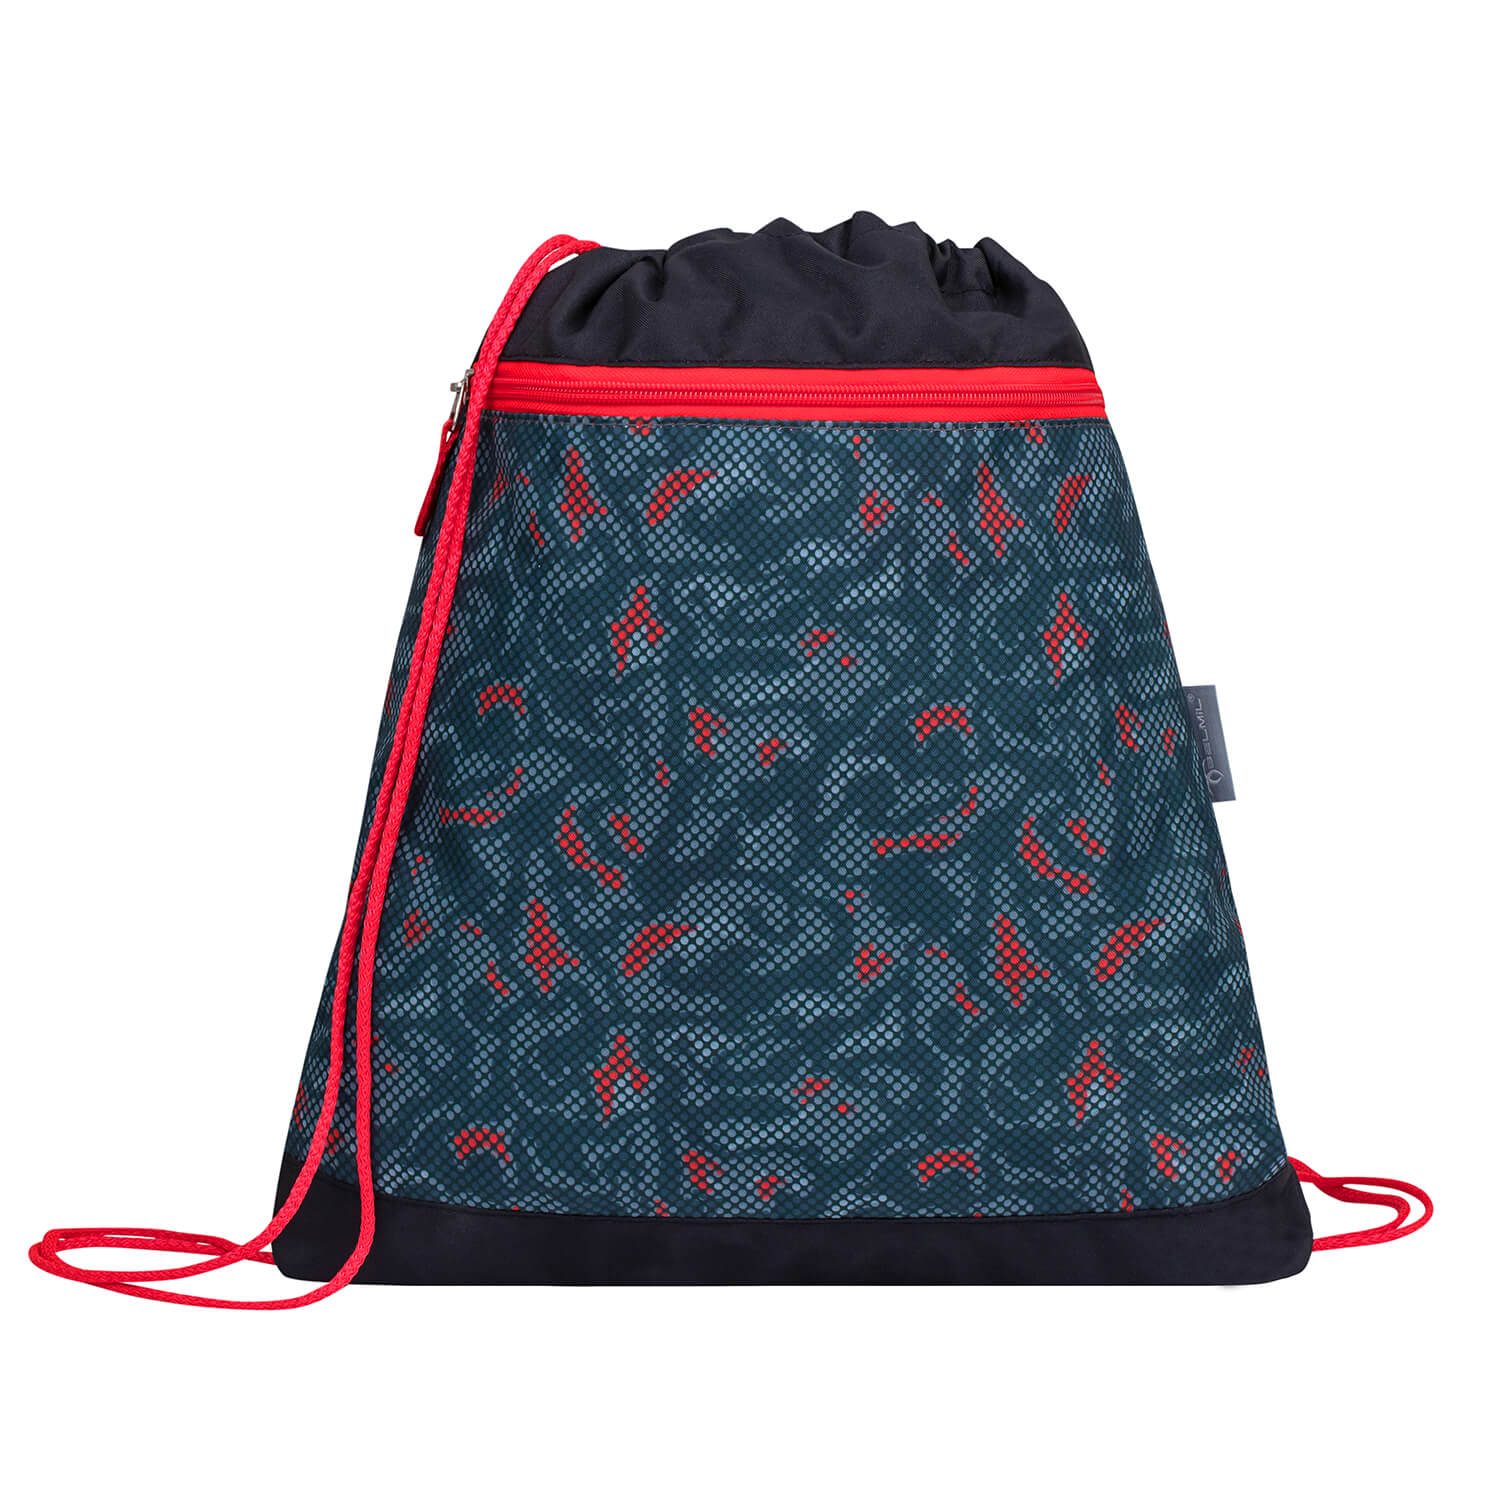 Compact Red Dots schoolbag set 4 pcs